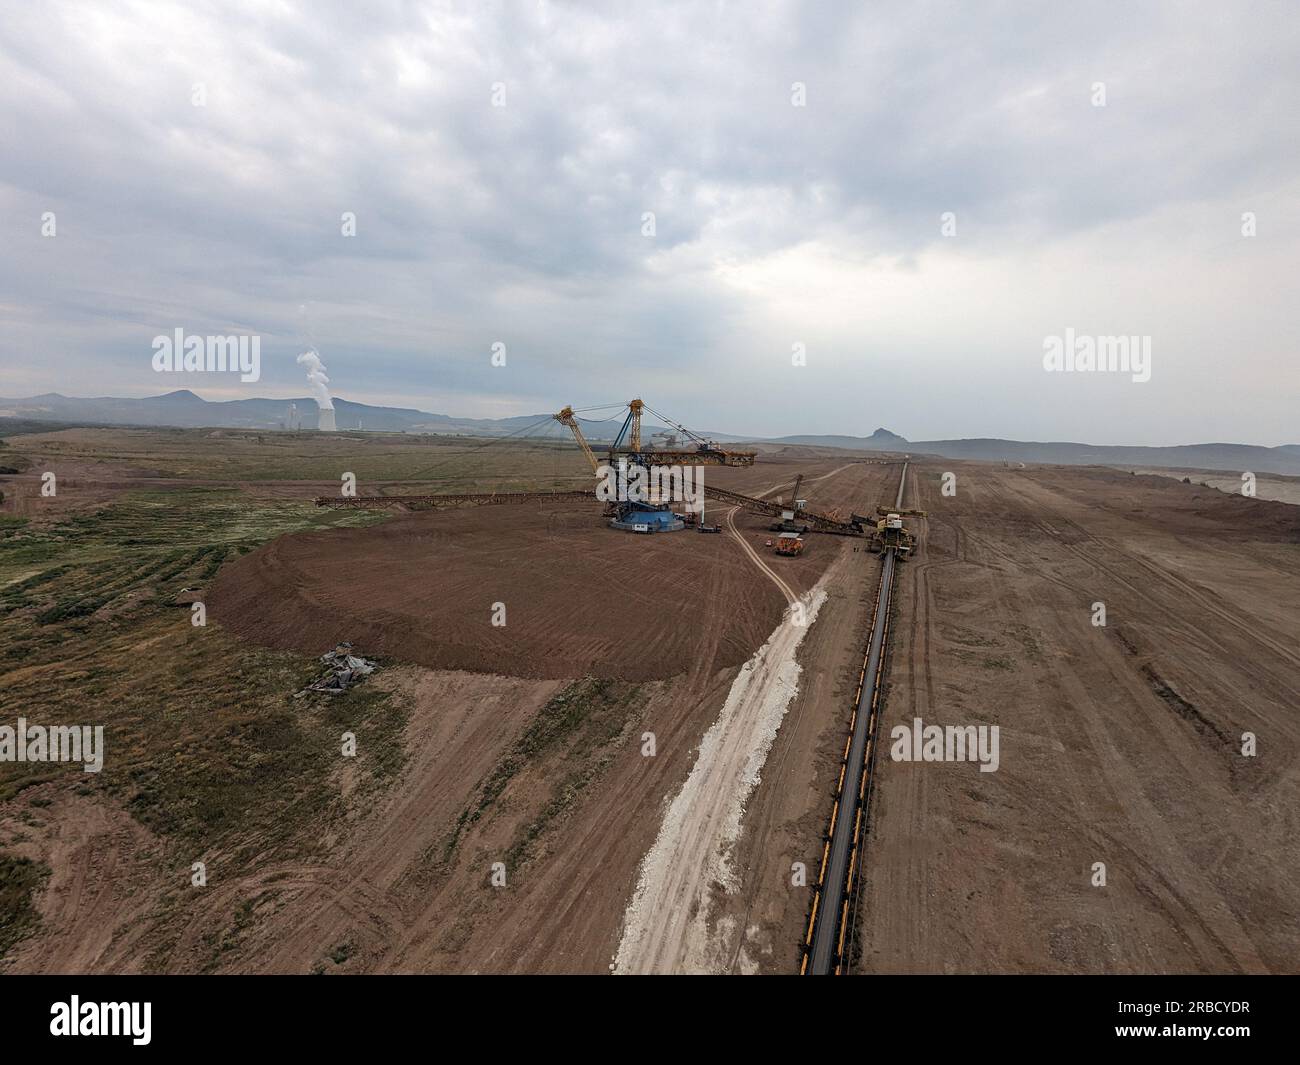 Enormi operazioni di scavo di escavatori gommati a benna nella miniera di carbone nella maggior parte delle regioni della repubblica Ceca, Europa, macchinari pesanti in un paesaggio rivisitato Foto Stock